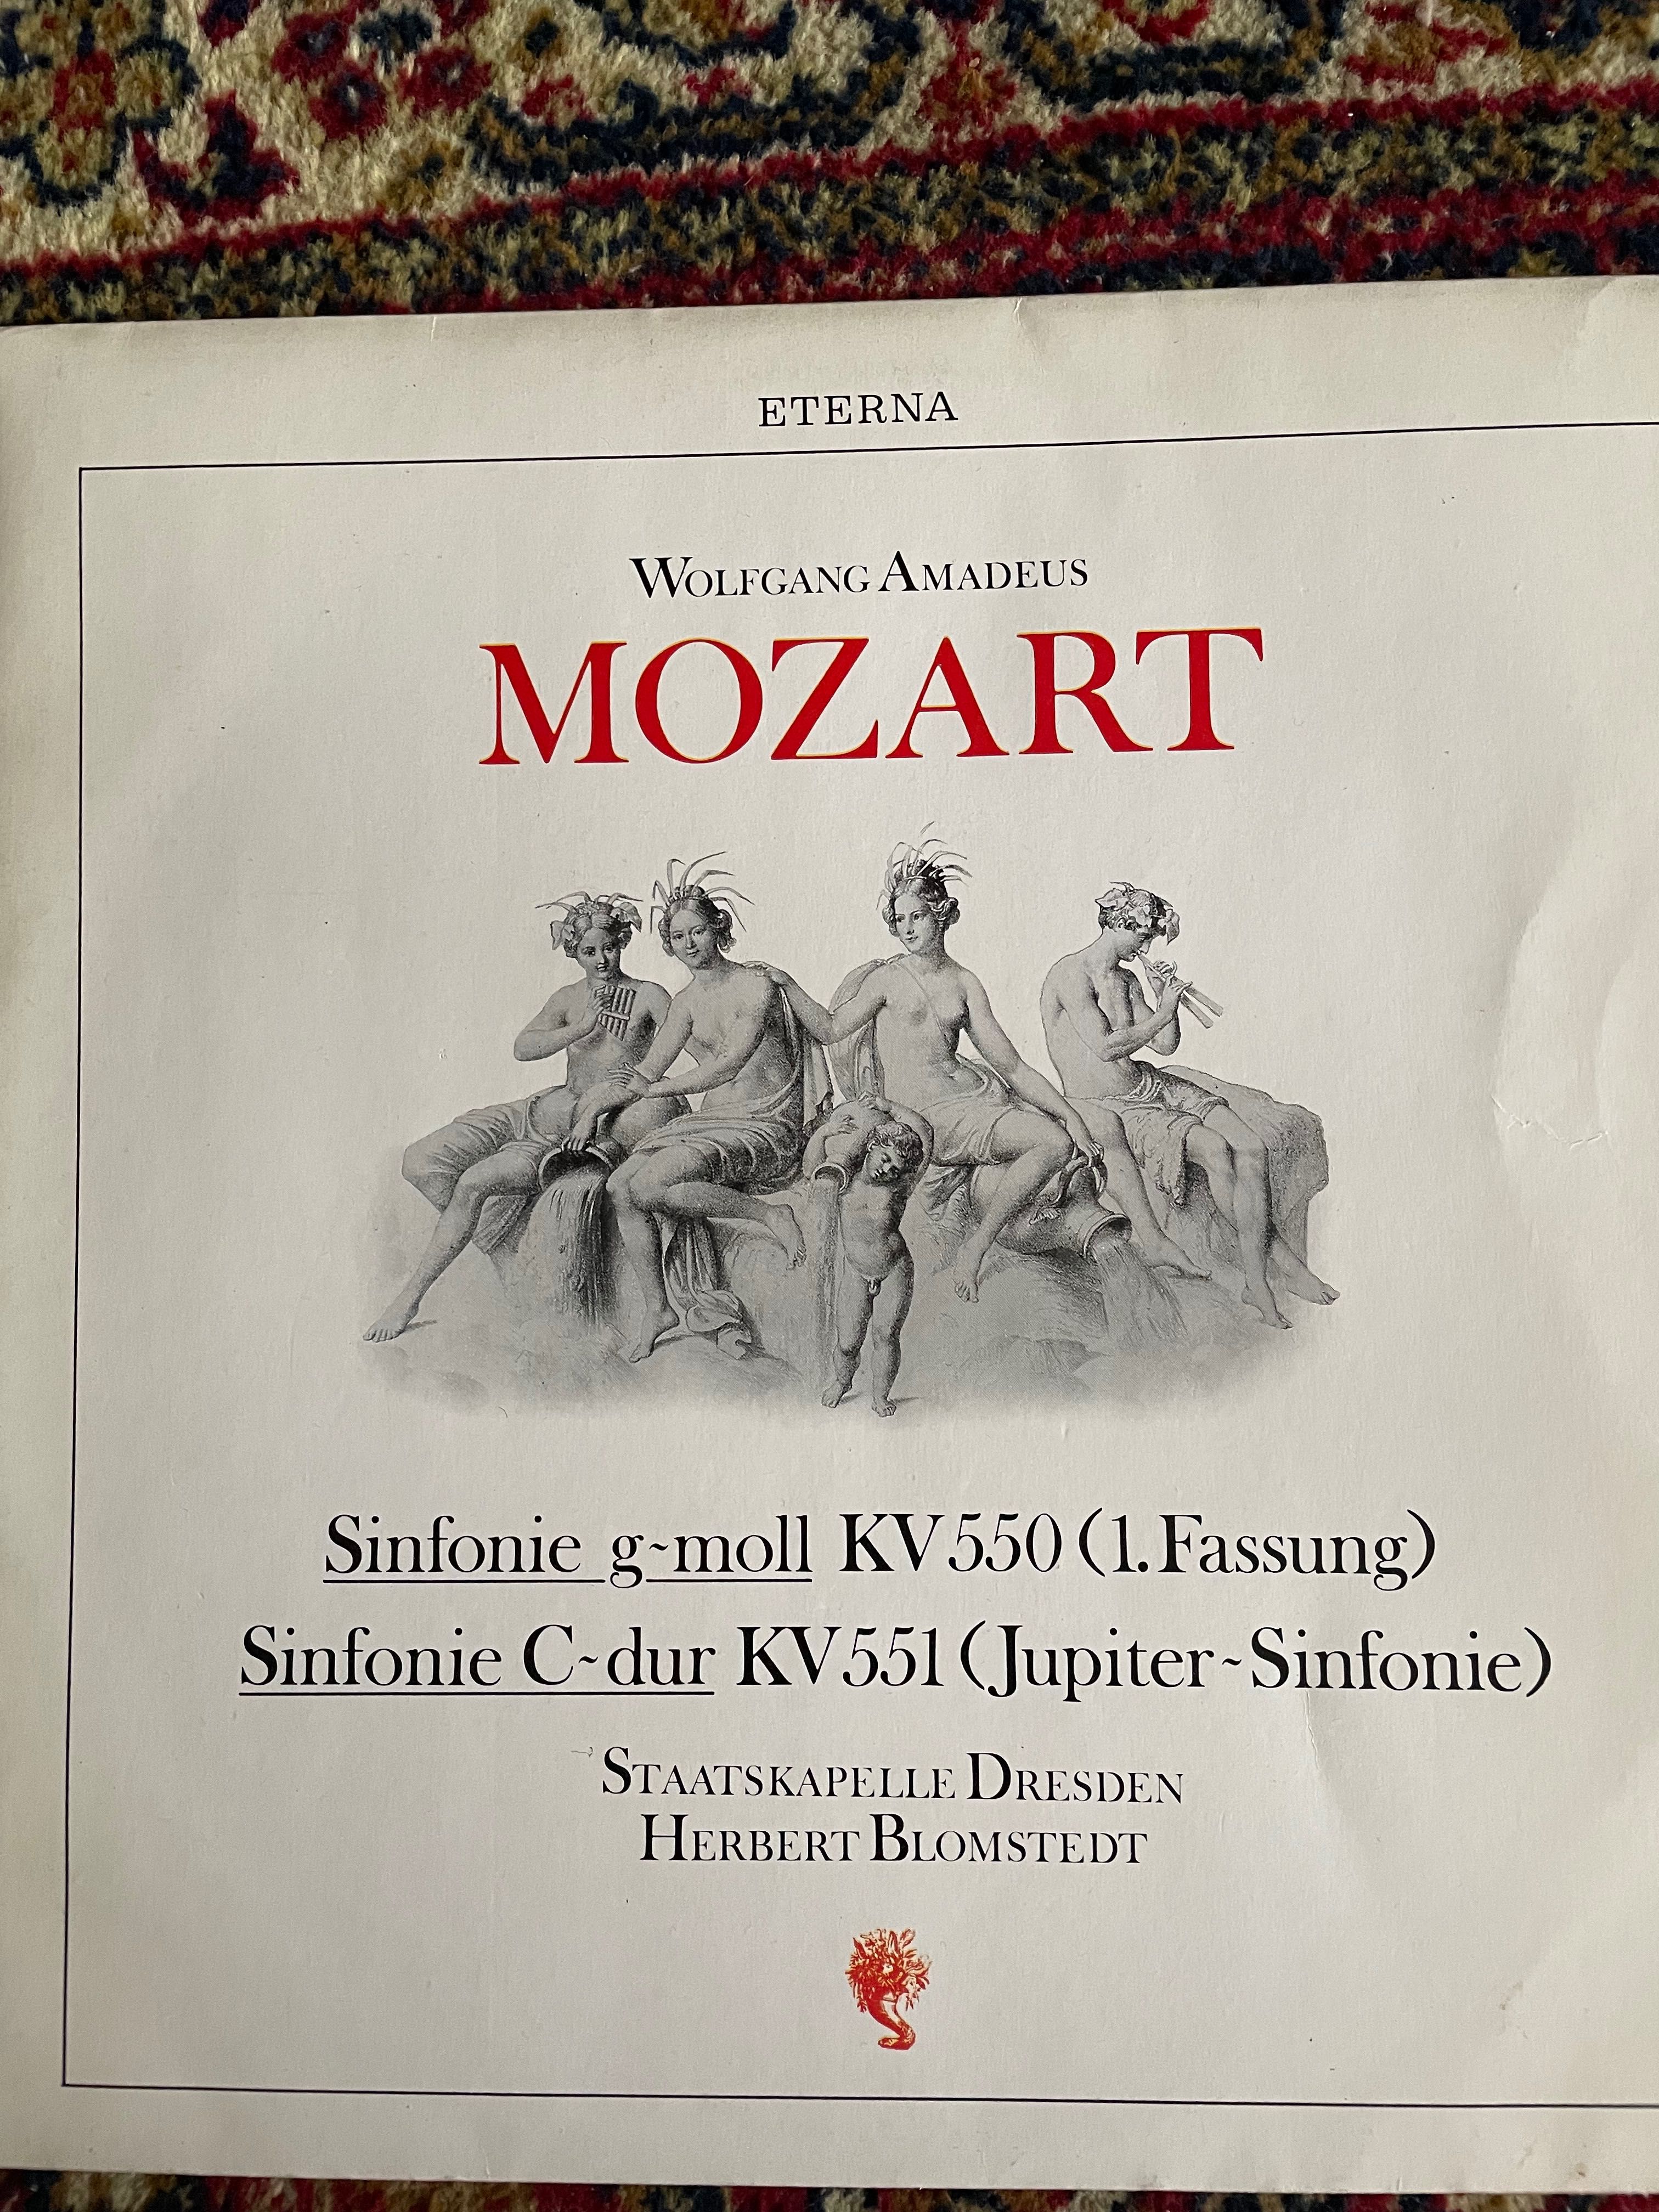 płyta winylowa: Mozart